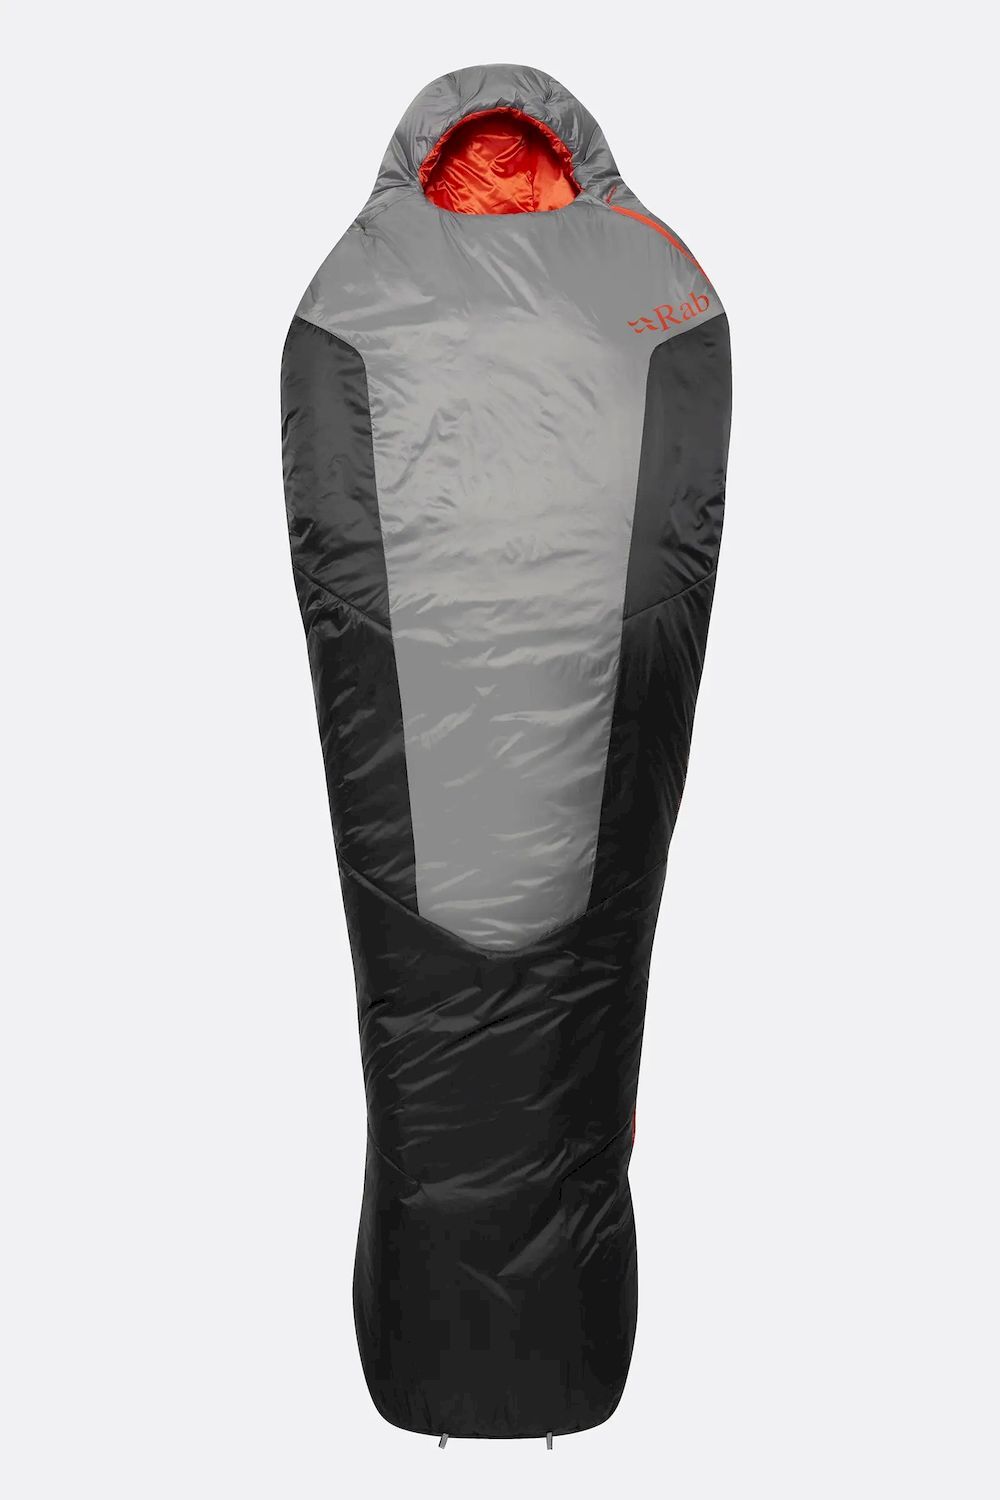 Rab Solar Ultra 1 - Sleeping bag - 0